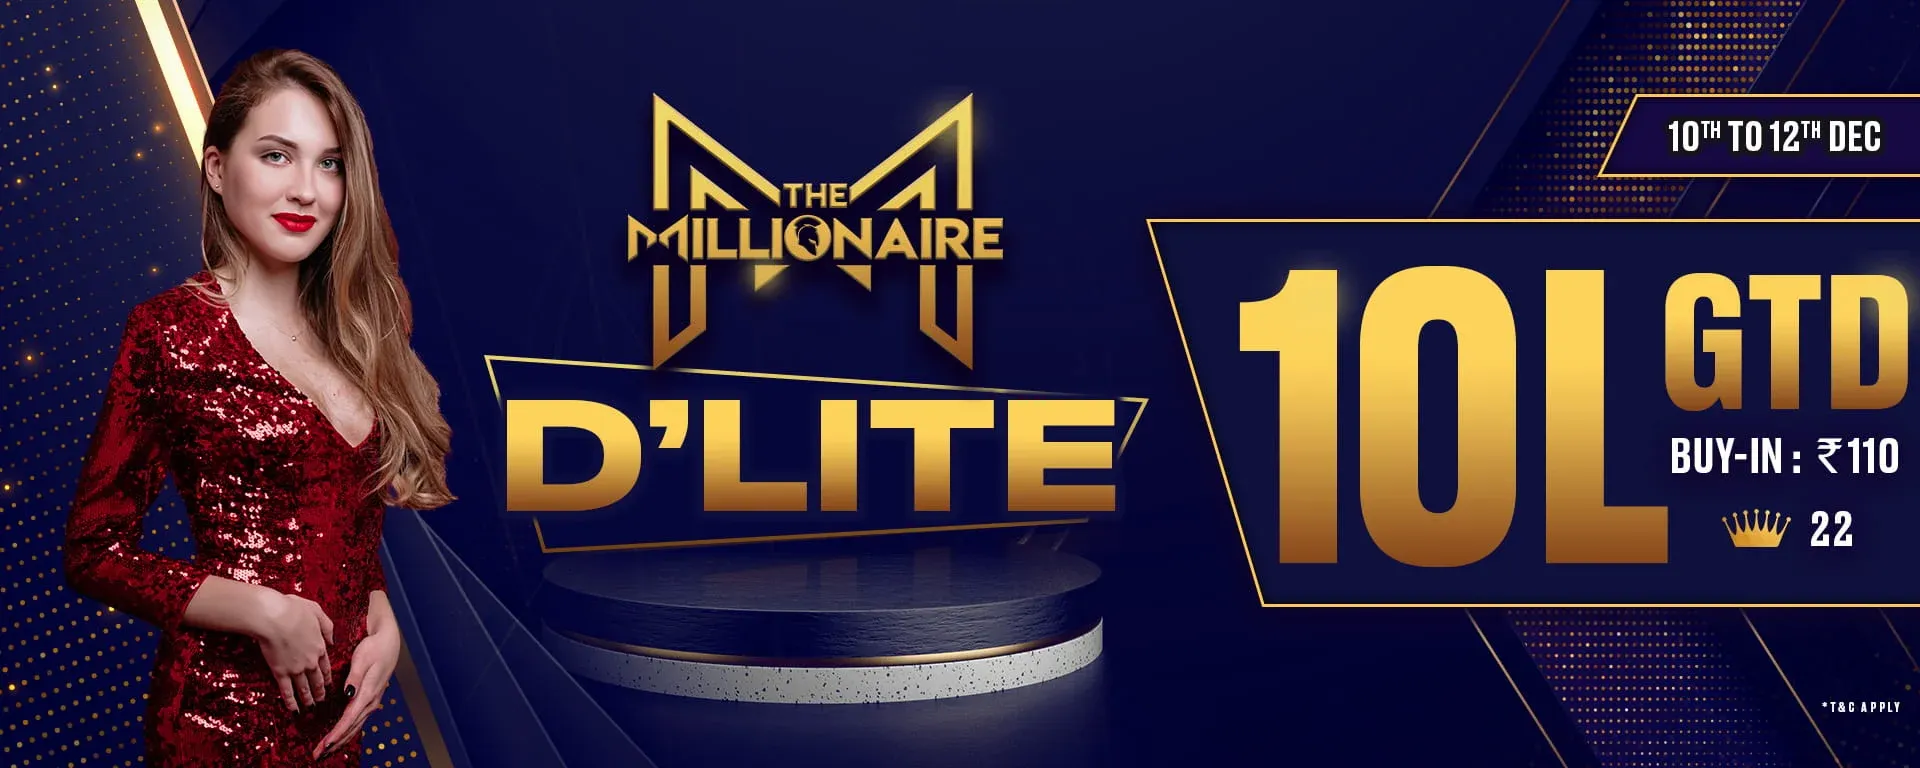 The Millionaire Series - D'Lite